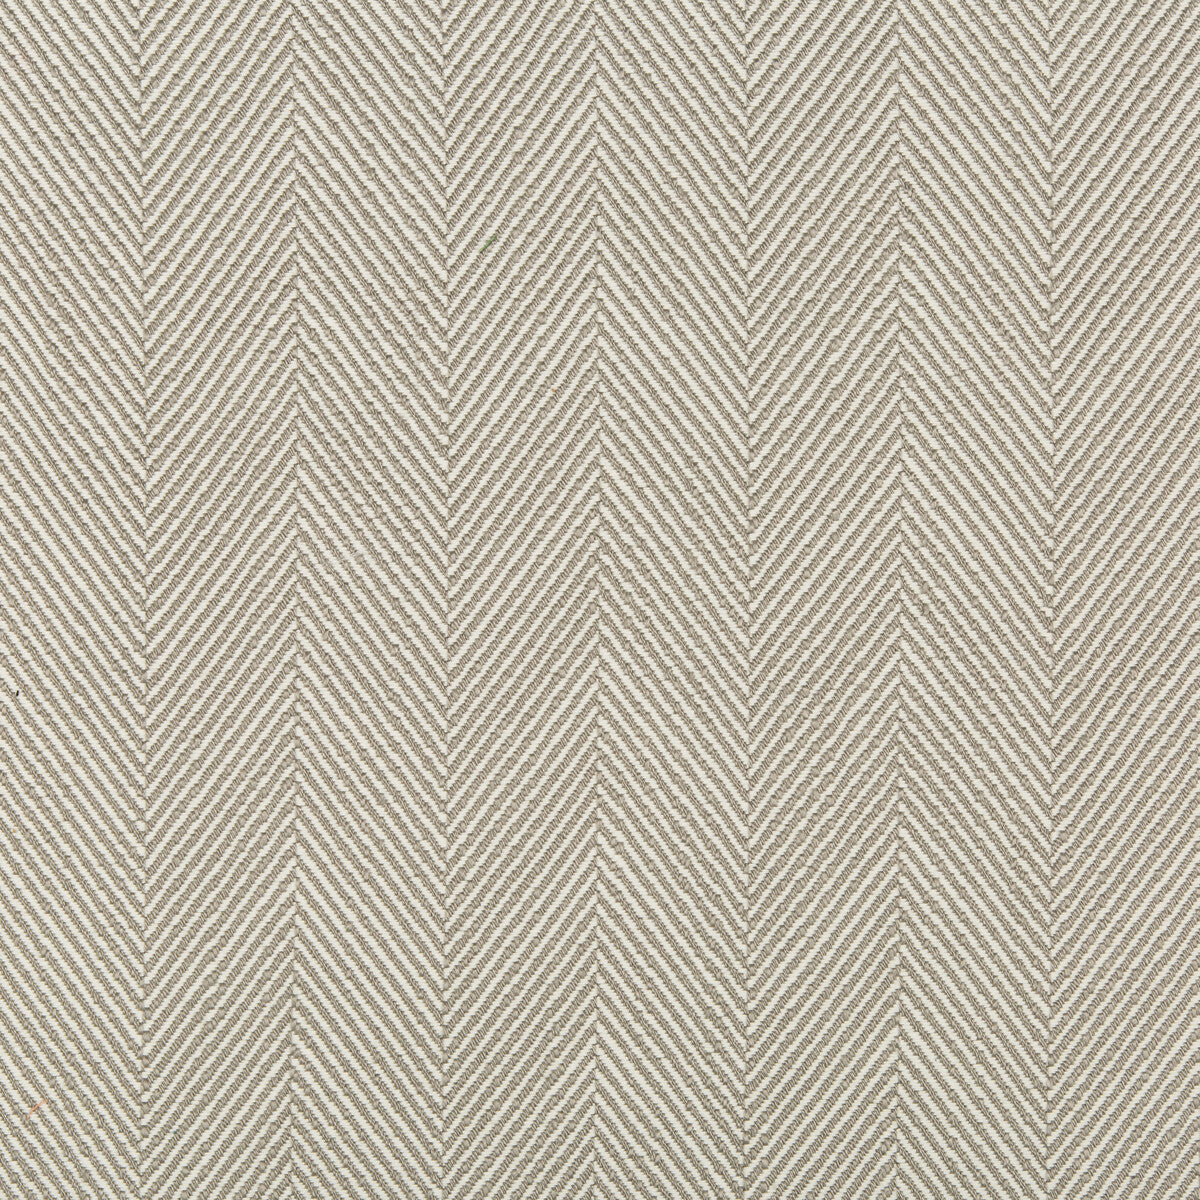 Kravet Design fabric in 35580-16 color - pattern 35580.16.0 - by Kravet Design